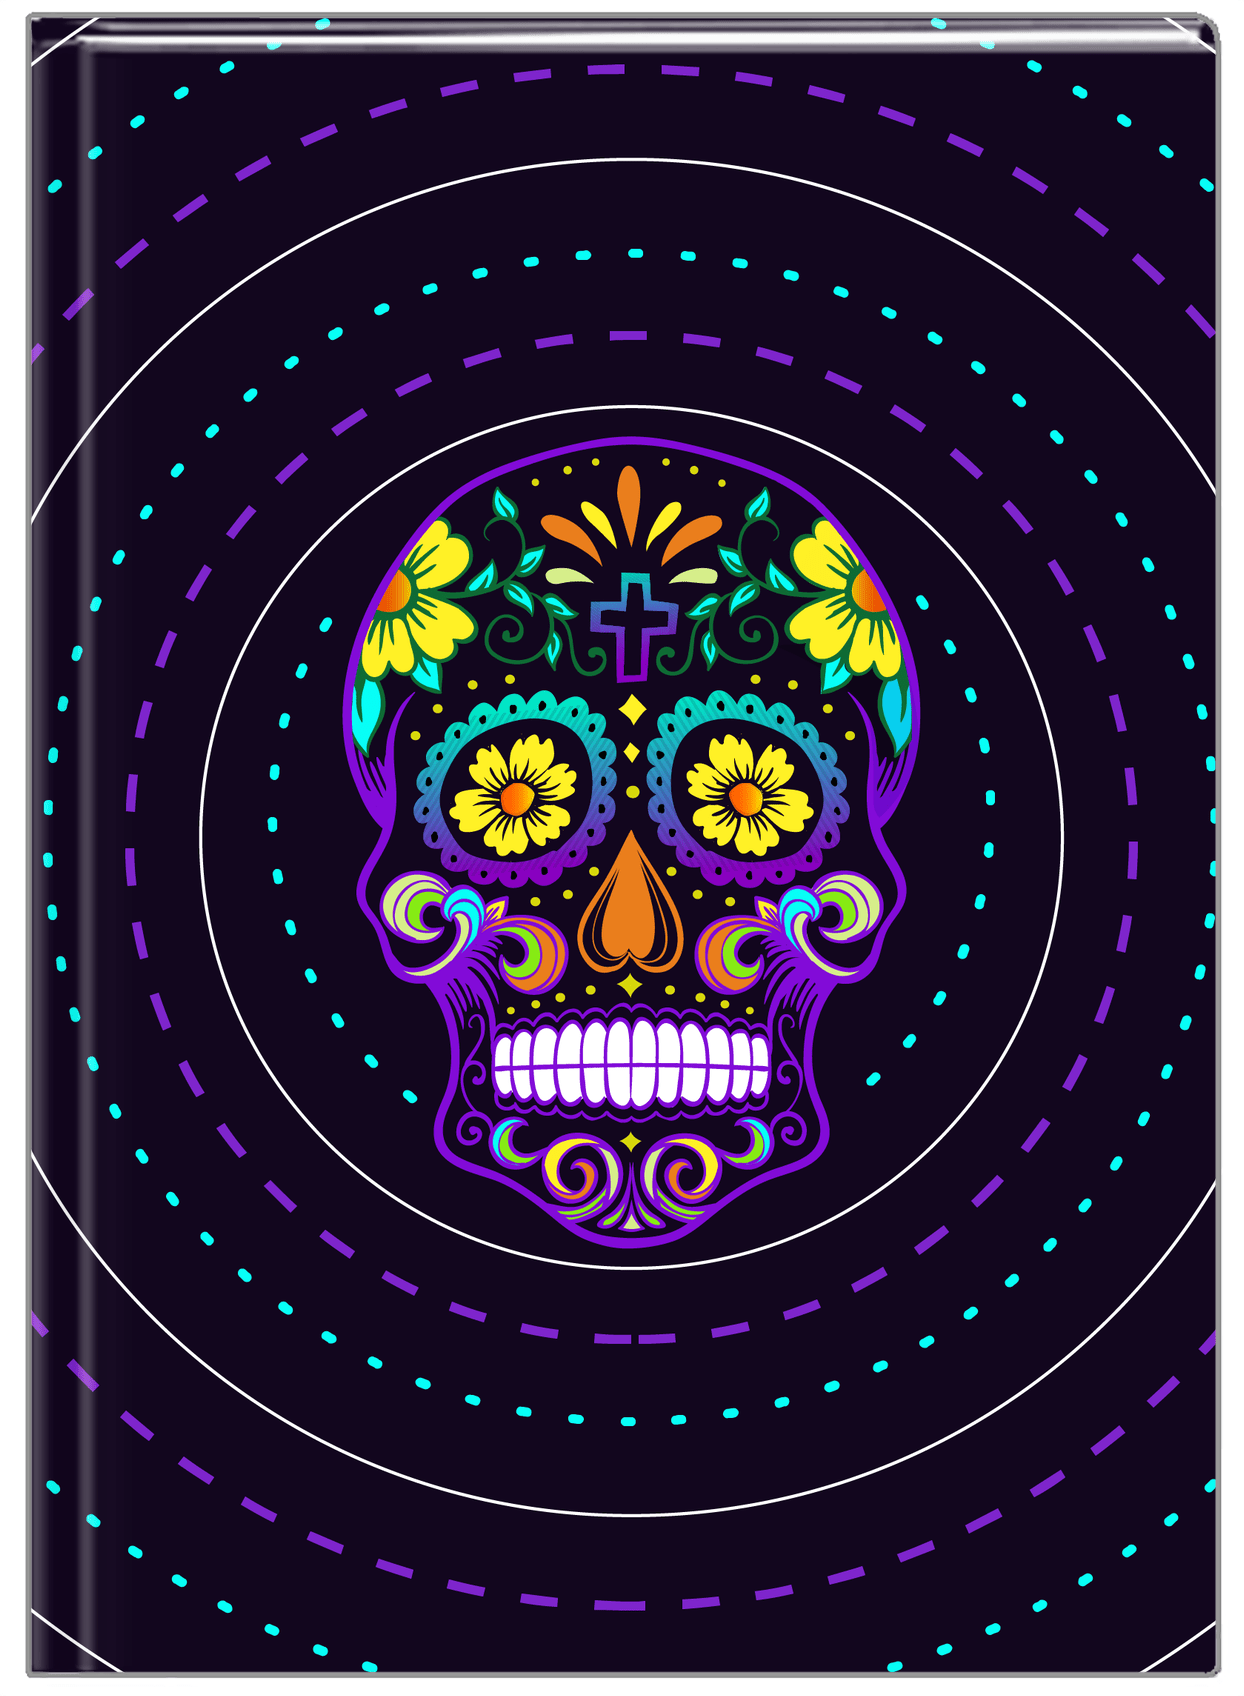 Sugar Skulls Journal - Purple Background - Front View